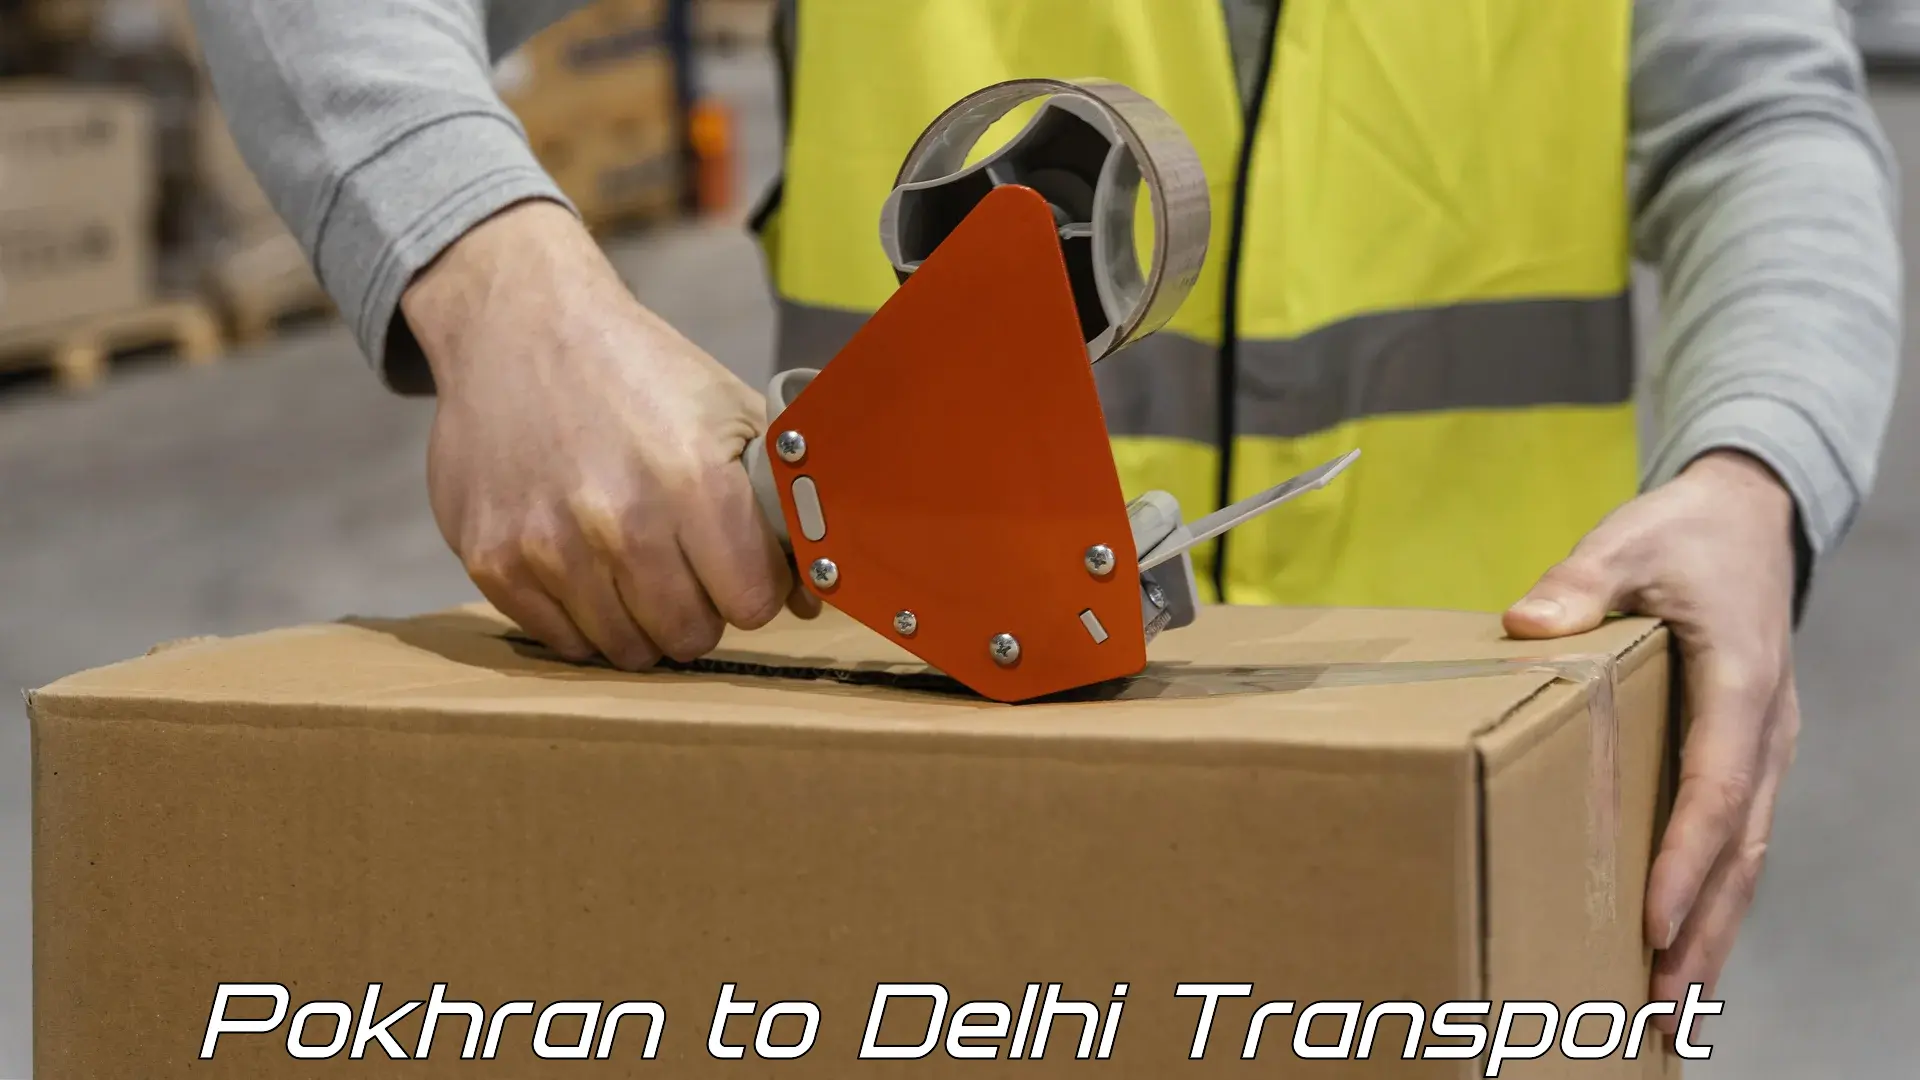 Logistics transportation services Pokhran to IIT Delhi